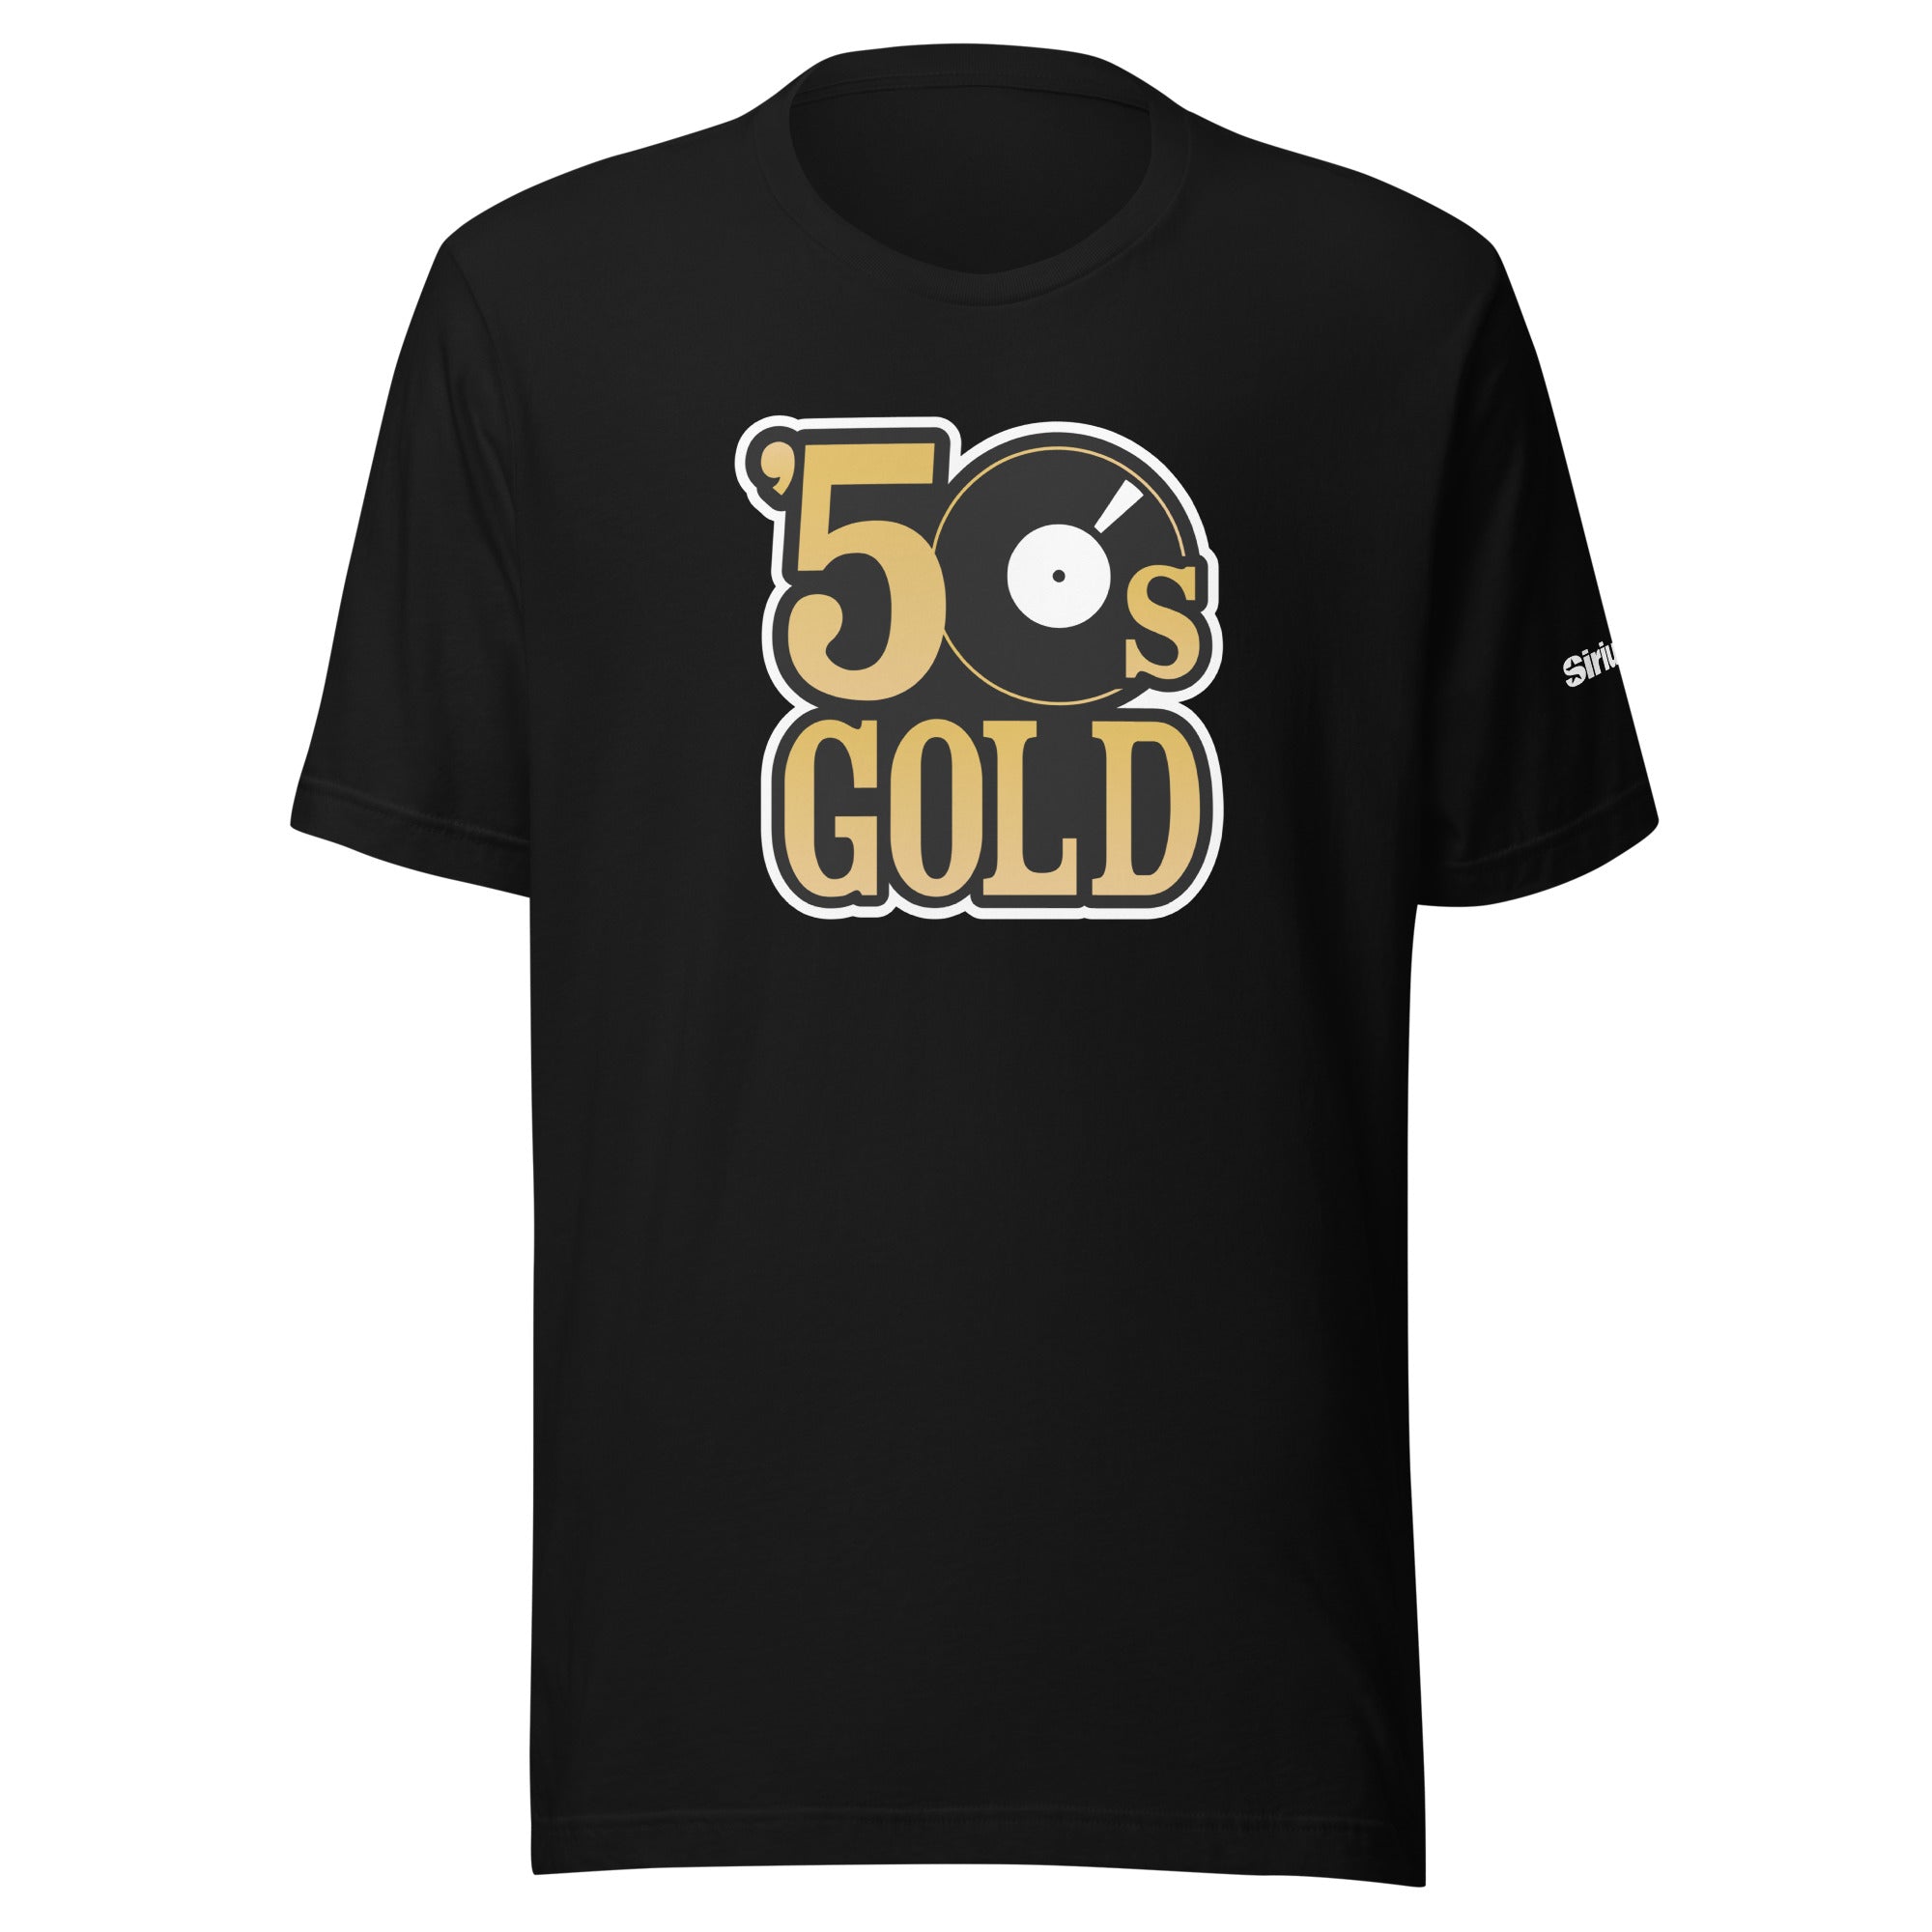 50s Gold: T-shirt (Black)